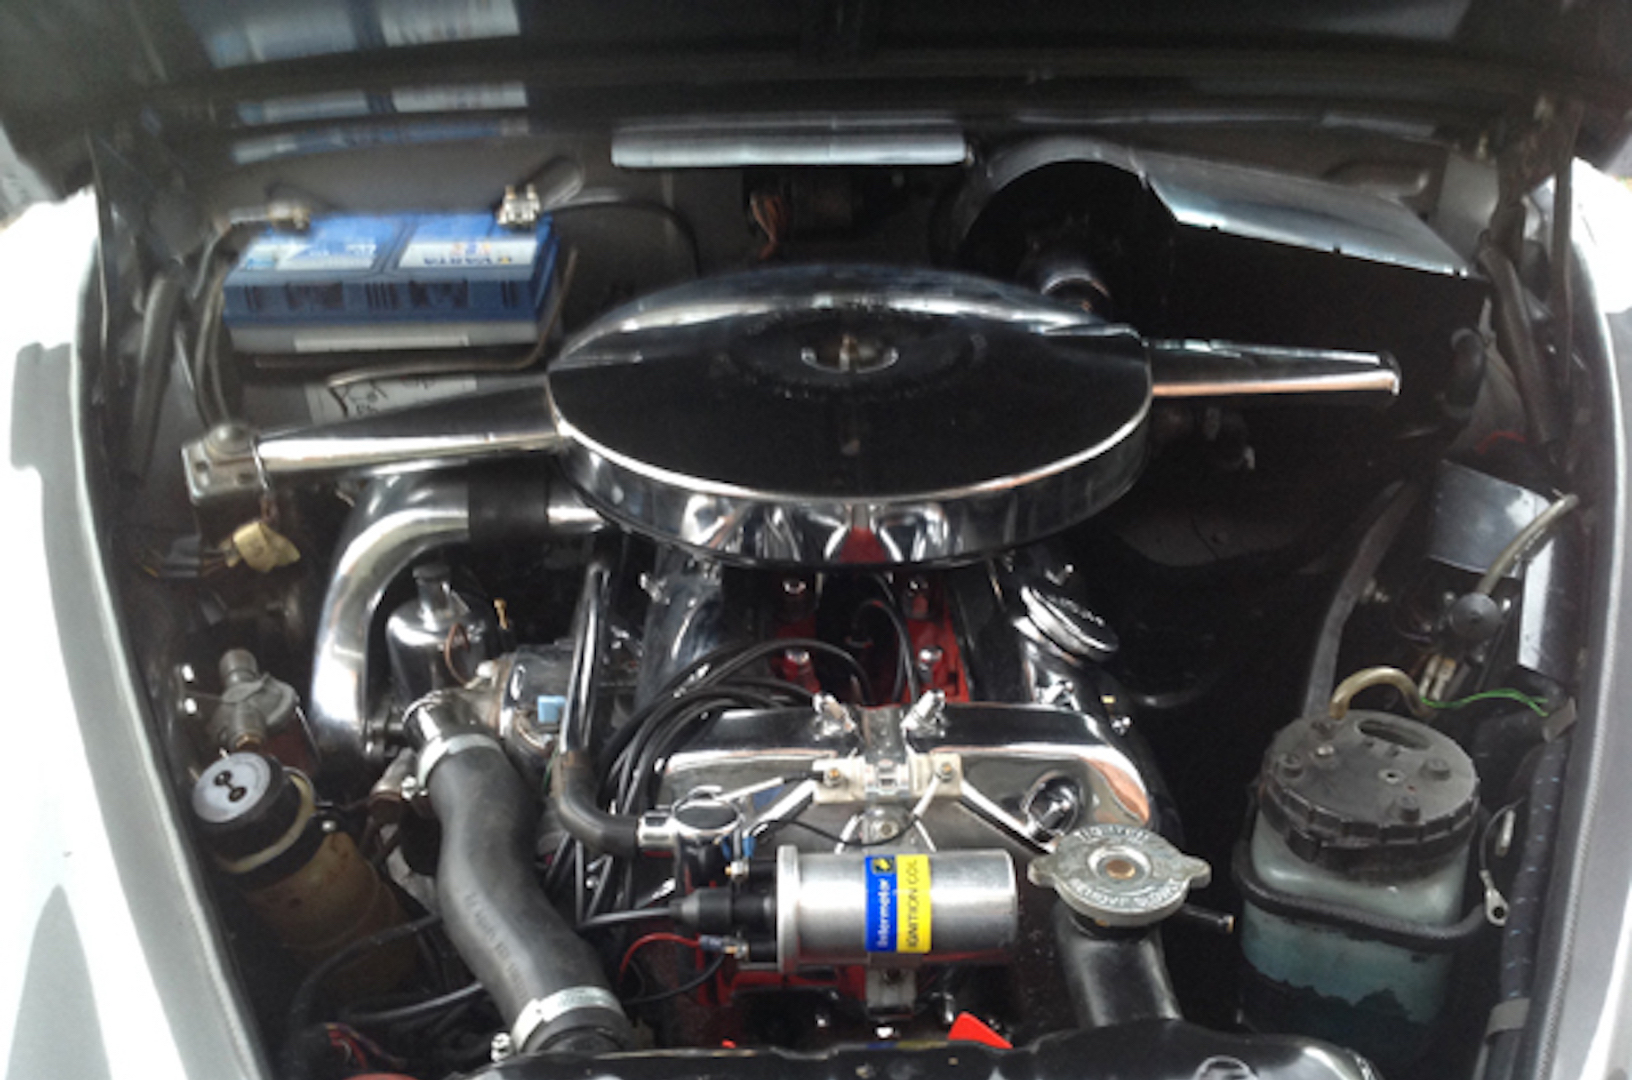 Jaguar engine, Polished and chromed